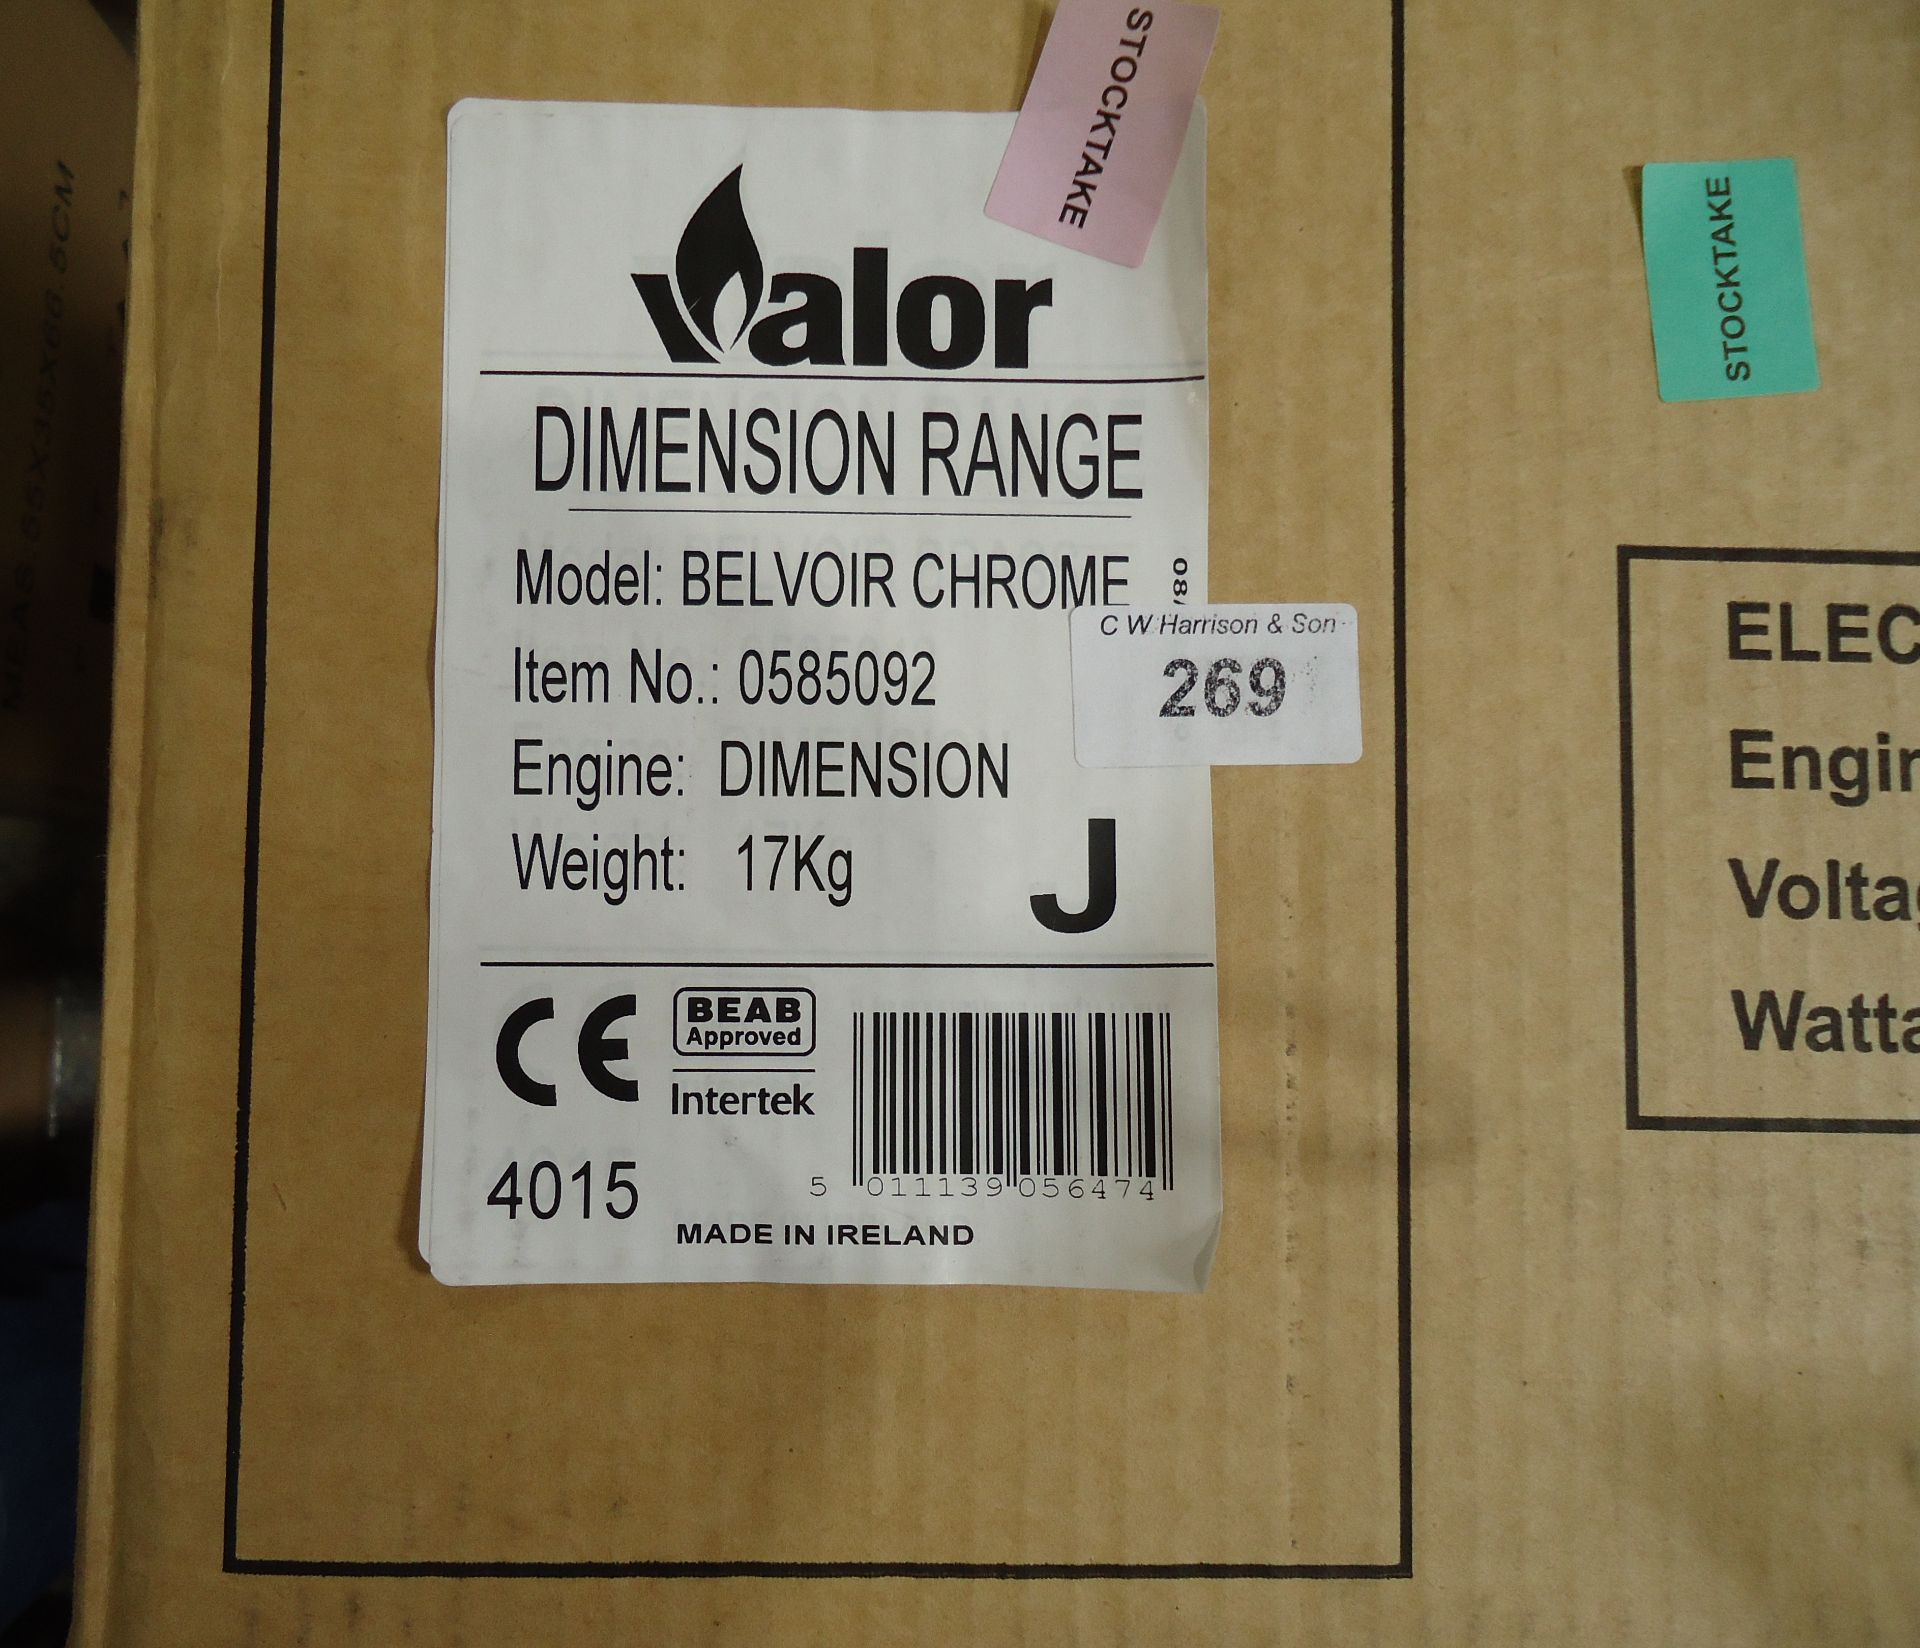 1 x Valor Chrome Fire Items 0585092